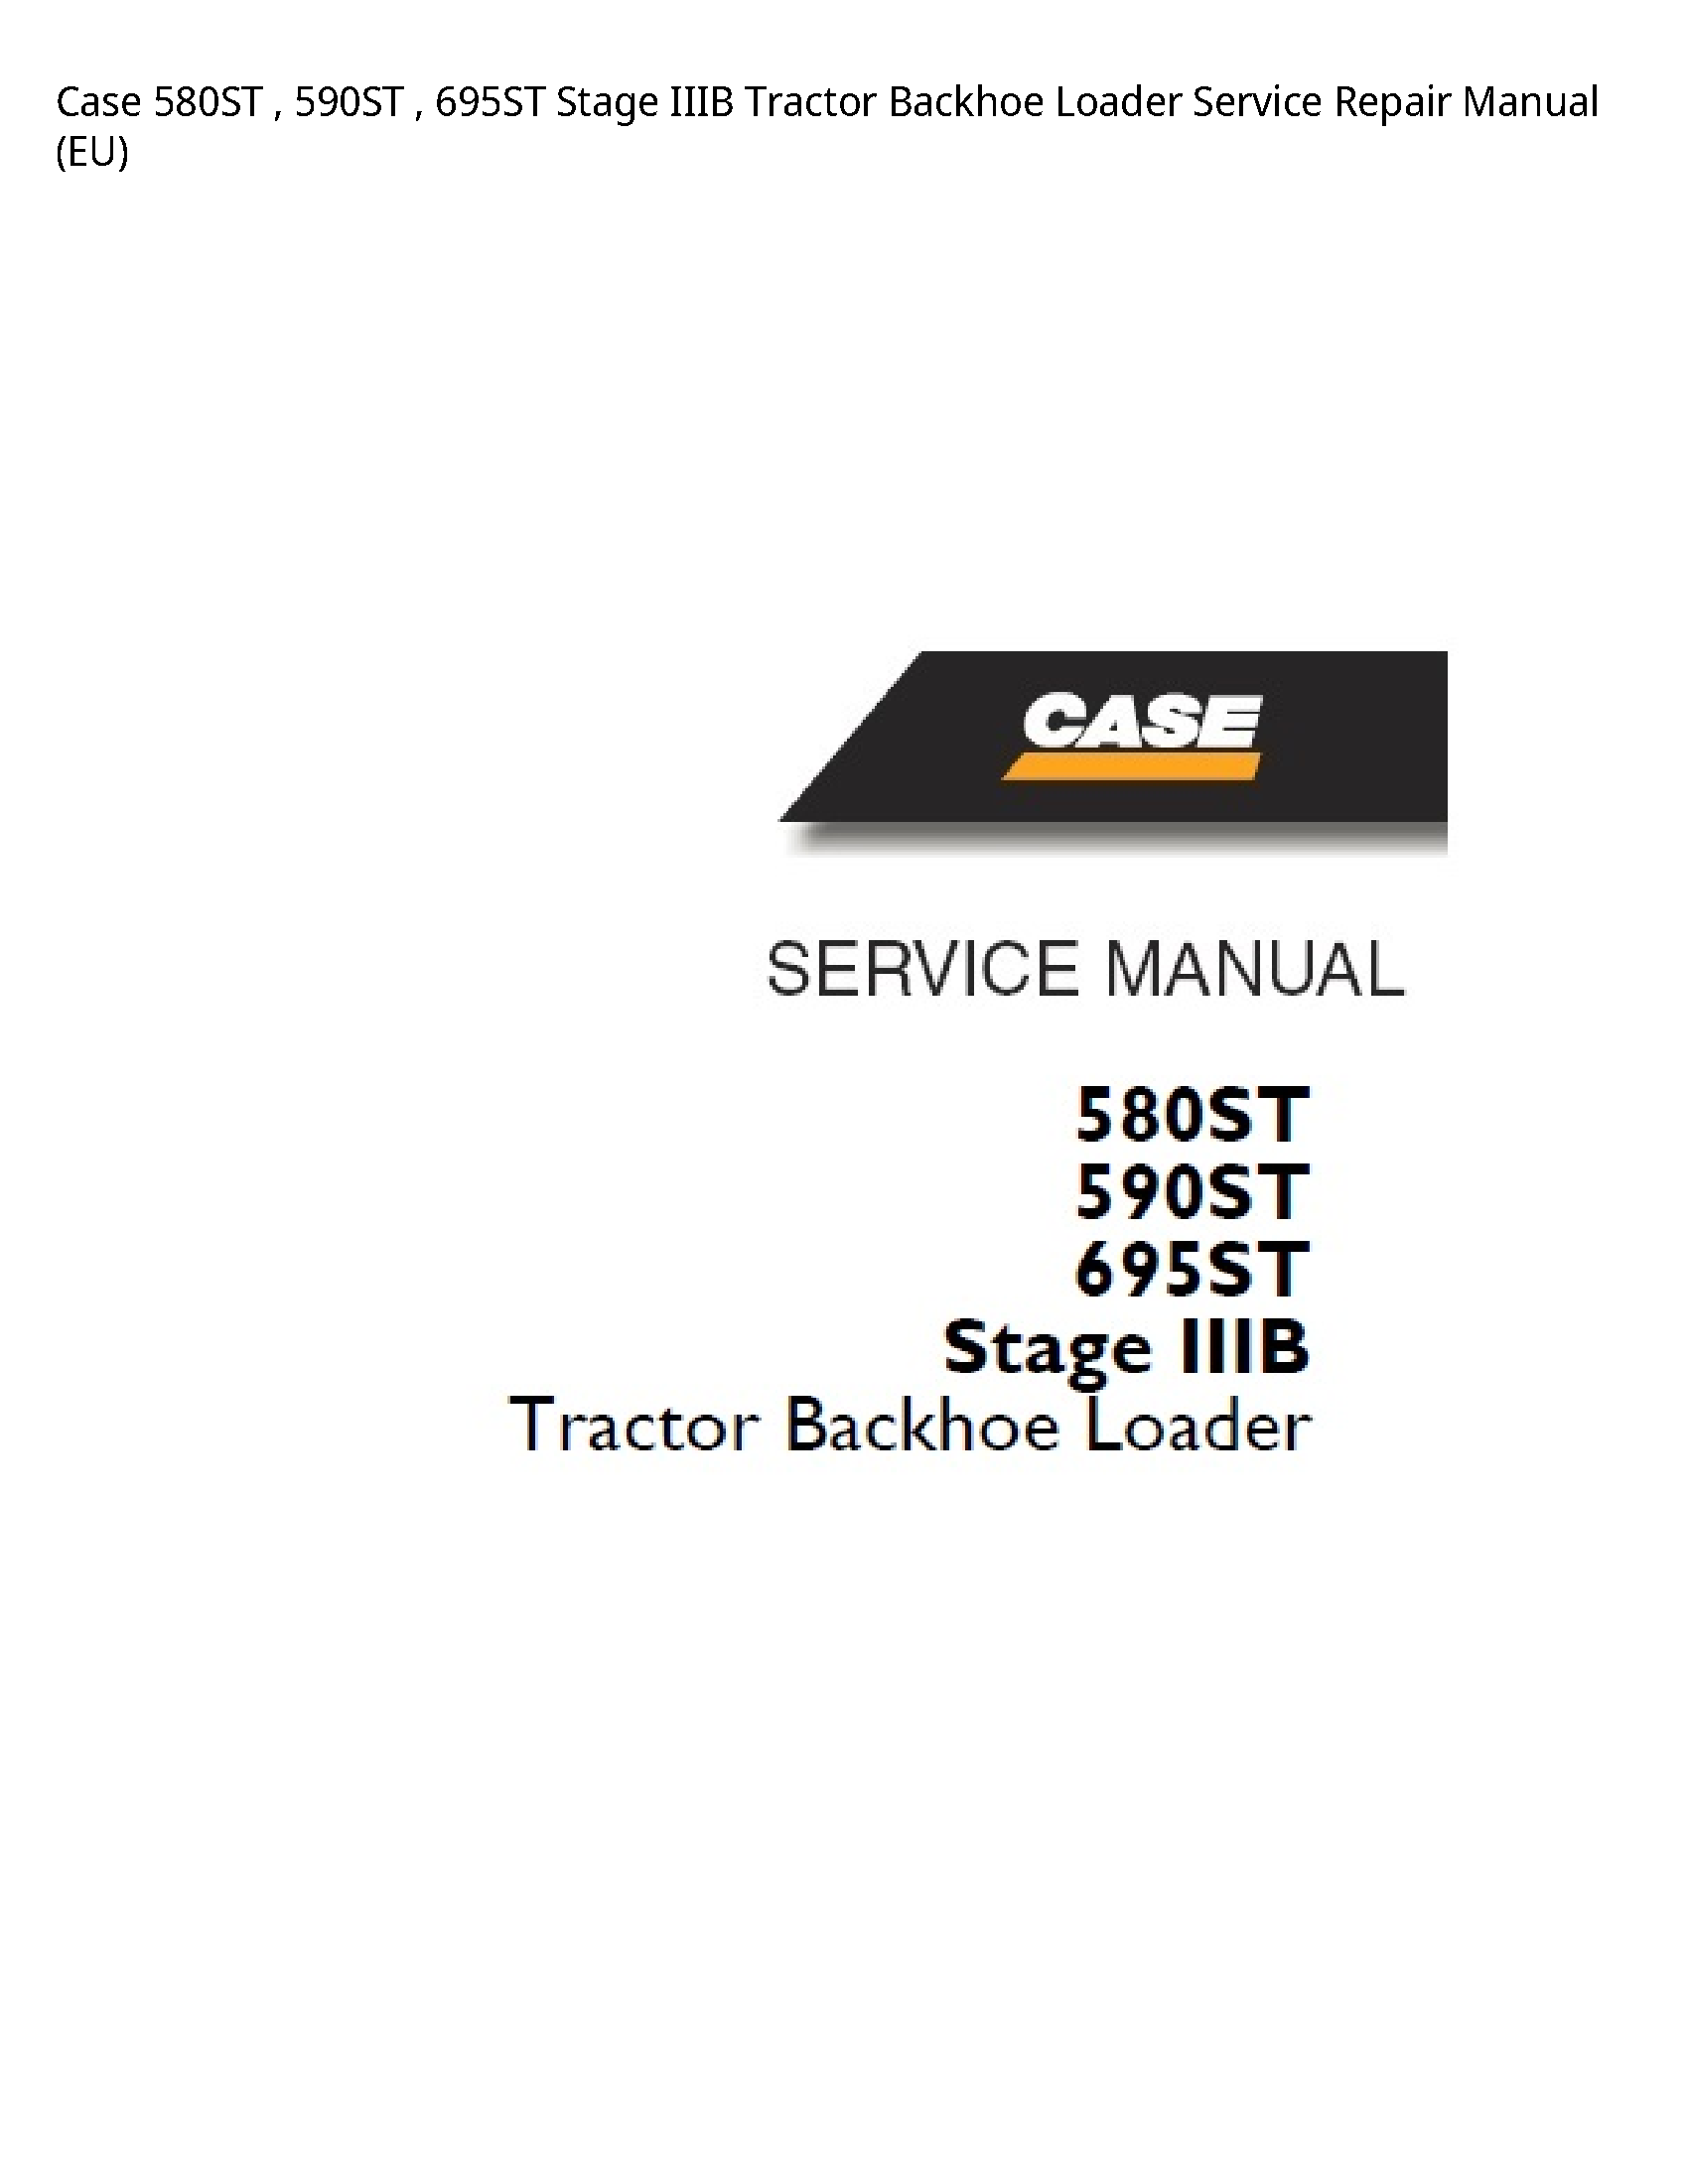 Case/Case IH 580ST Stage IIIB Tractor Backhoe Loader manual